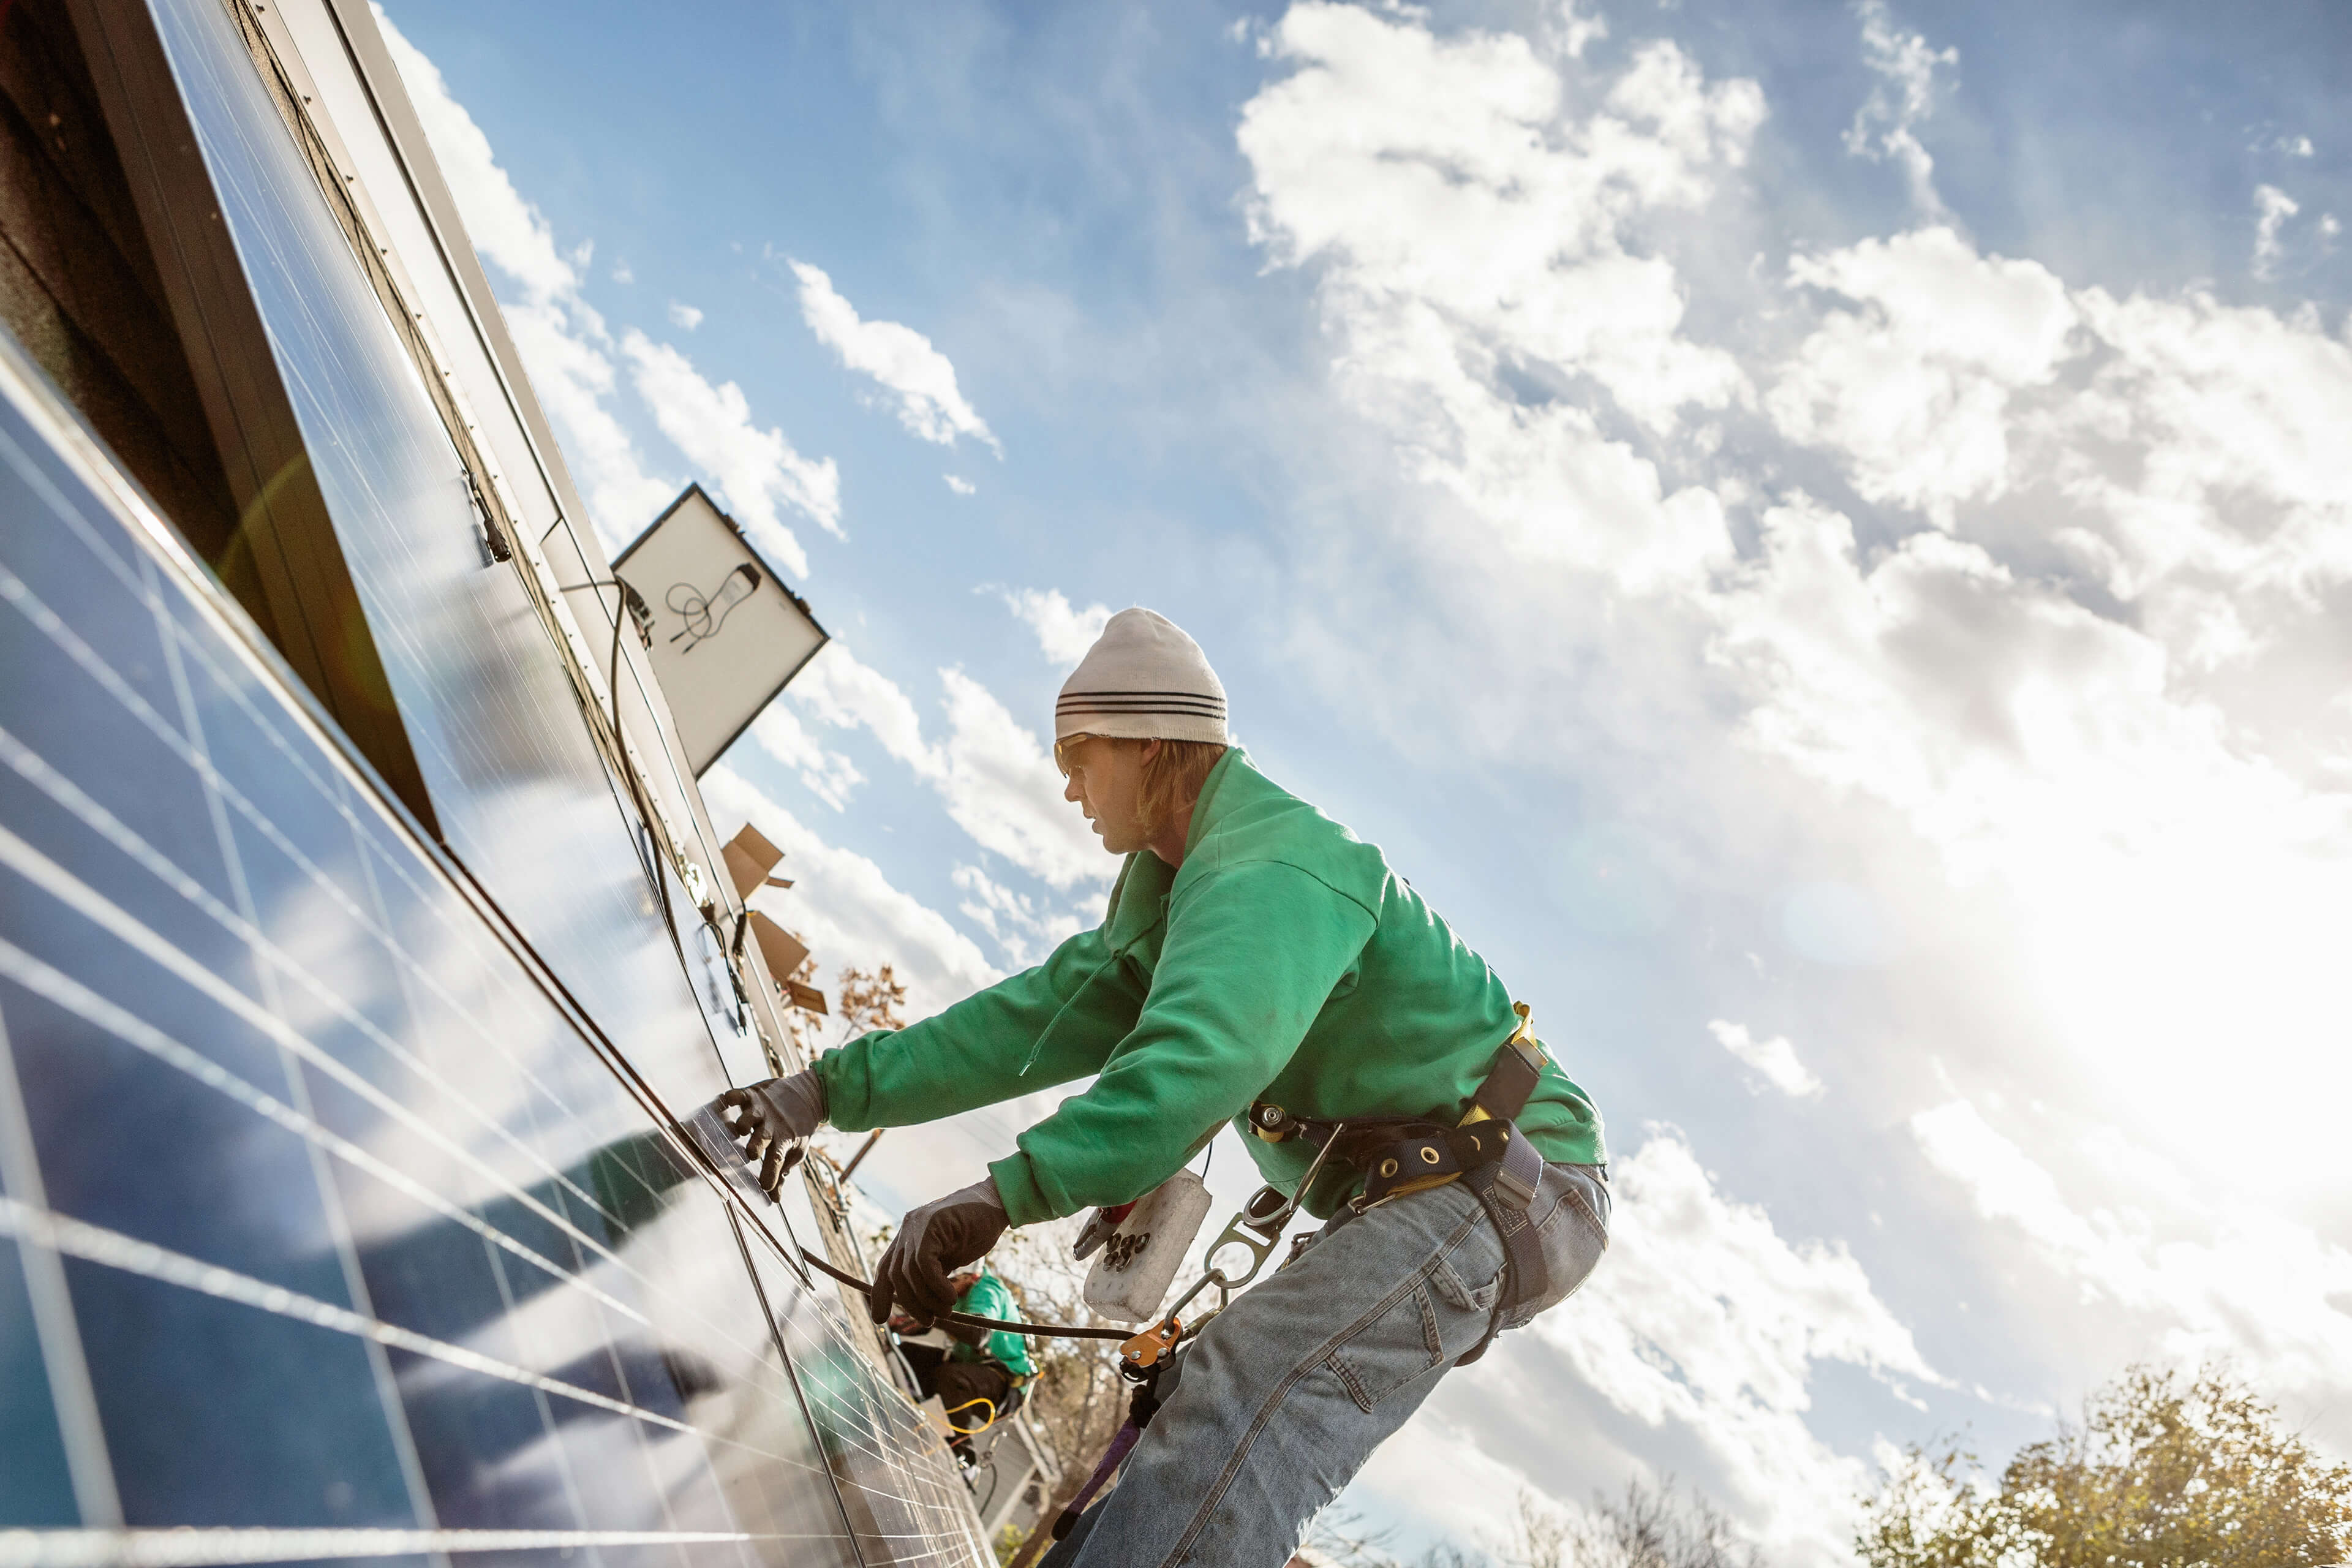 
            Mitglied des Bauteams, das ein Solarpaneel auf einem Hausbild installiert
        